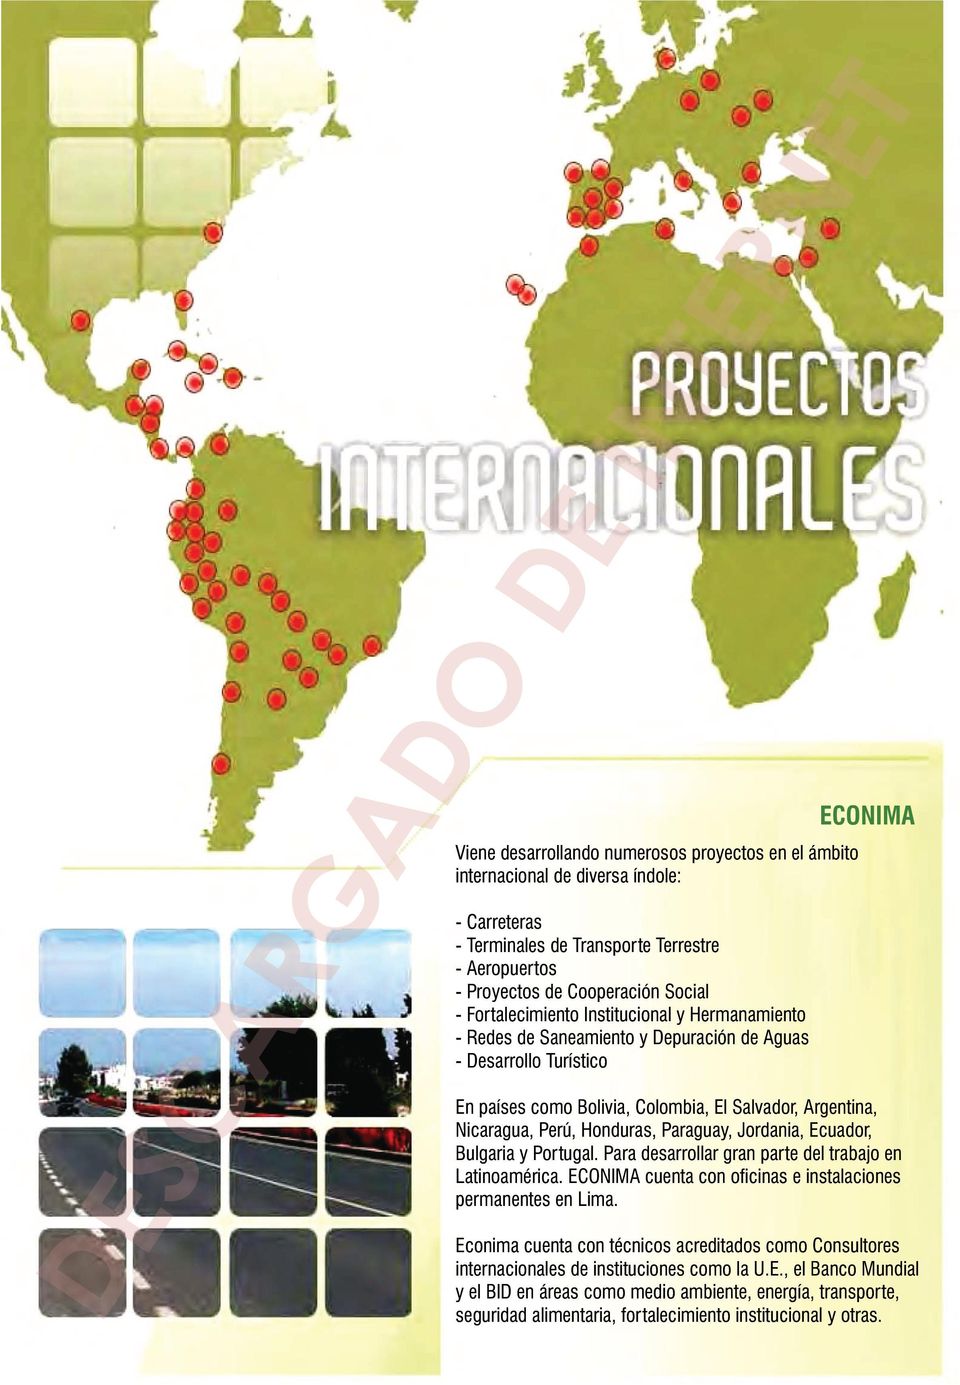 Honduras, Paraguay, Jordania, Ecuador, Bulgaria y Portugal. Para desarrollar gran parte del trabajo en Latinoamérica. ECONIMA cuenta con oficinas e instalaciones permanentes en Lima.